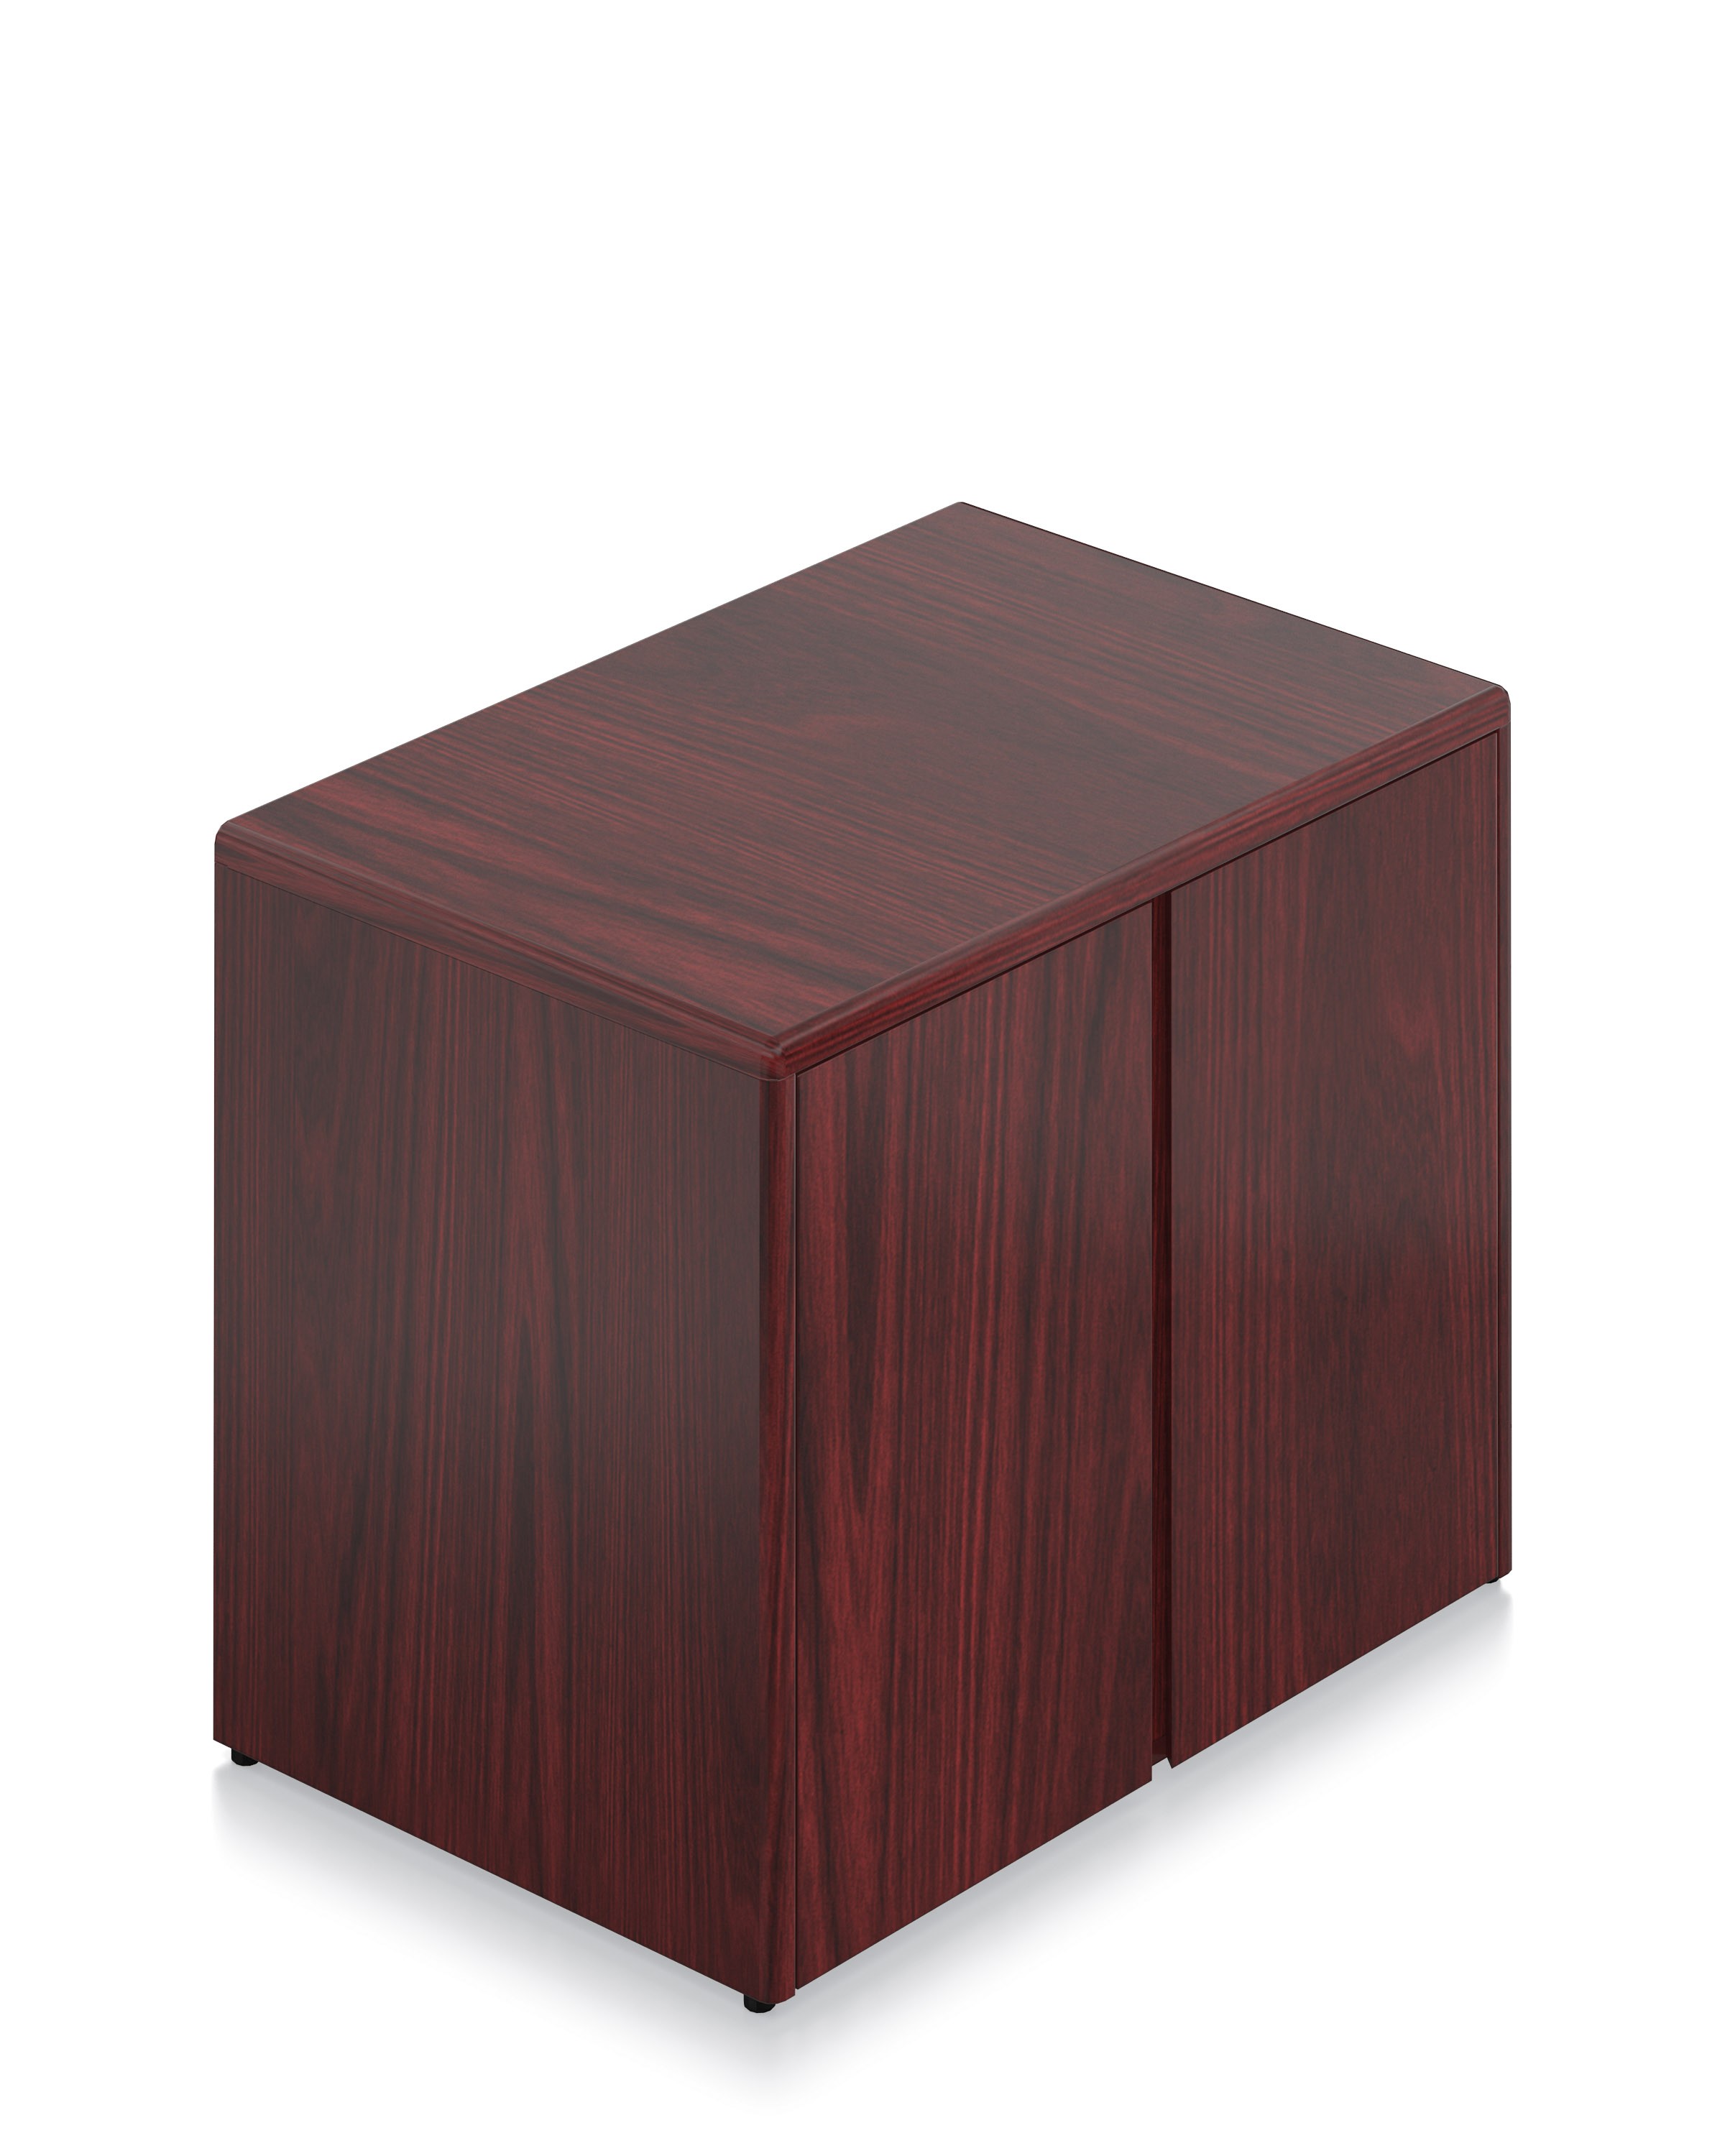  Margate Wood Veneer Storage Cabinet 